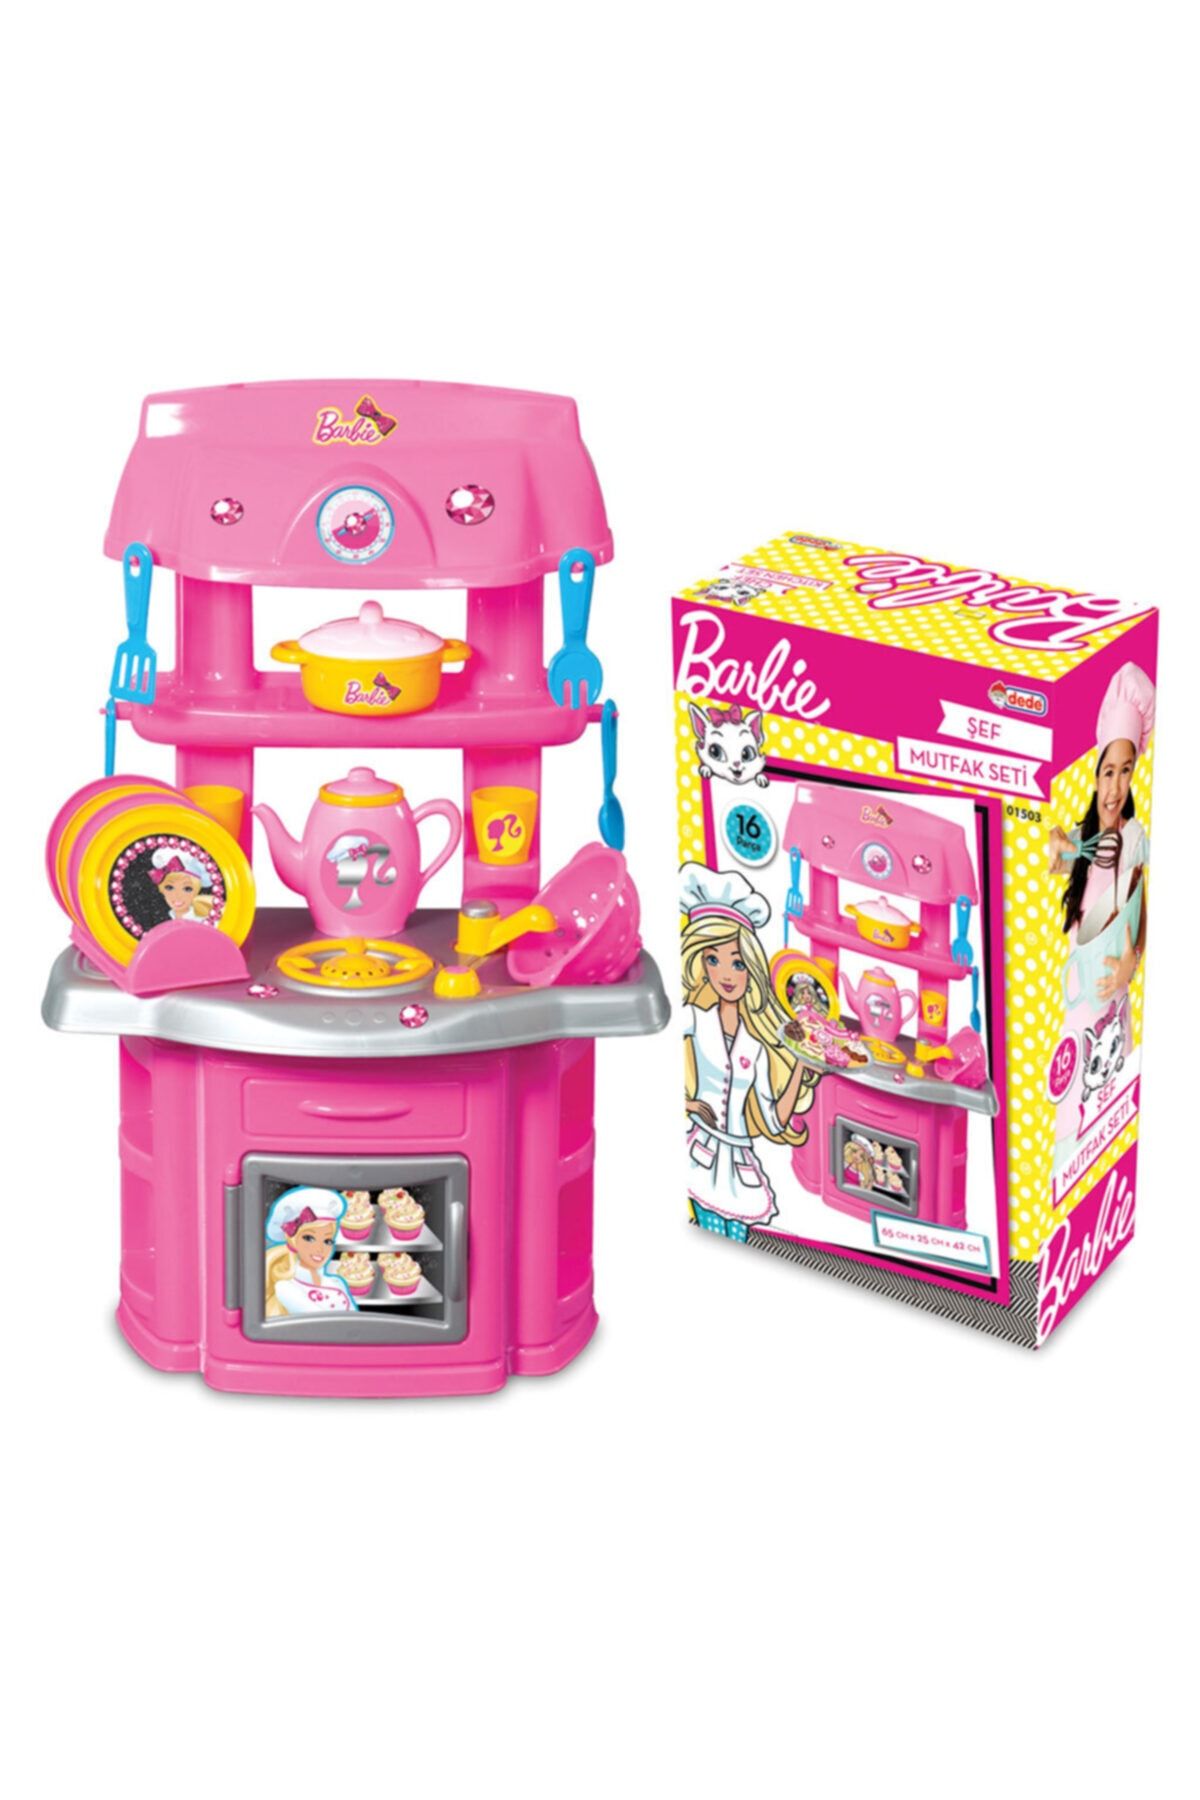 DEDE Barbie Şef Mutfak Seti Kız Çocuk Oyuncak Mutfak Evcilik Oyuncak Seti